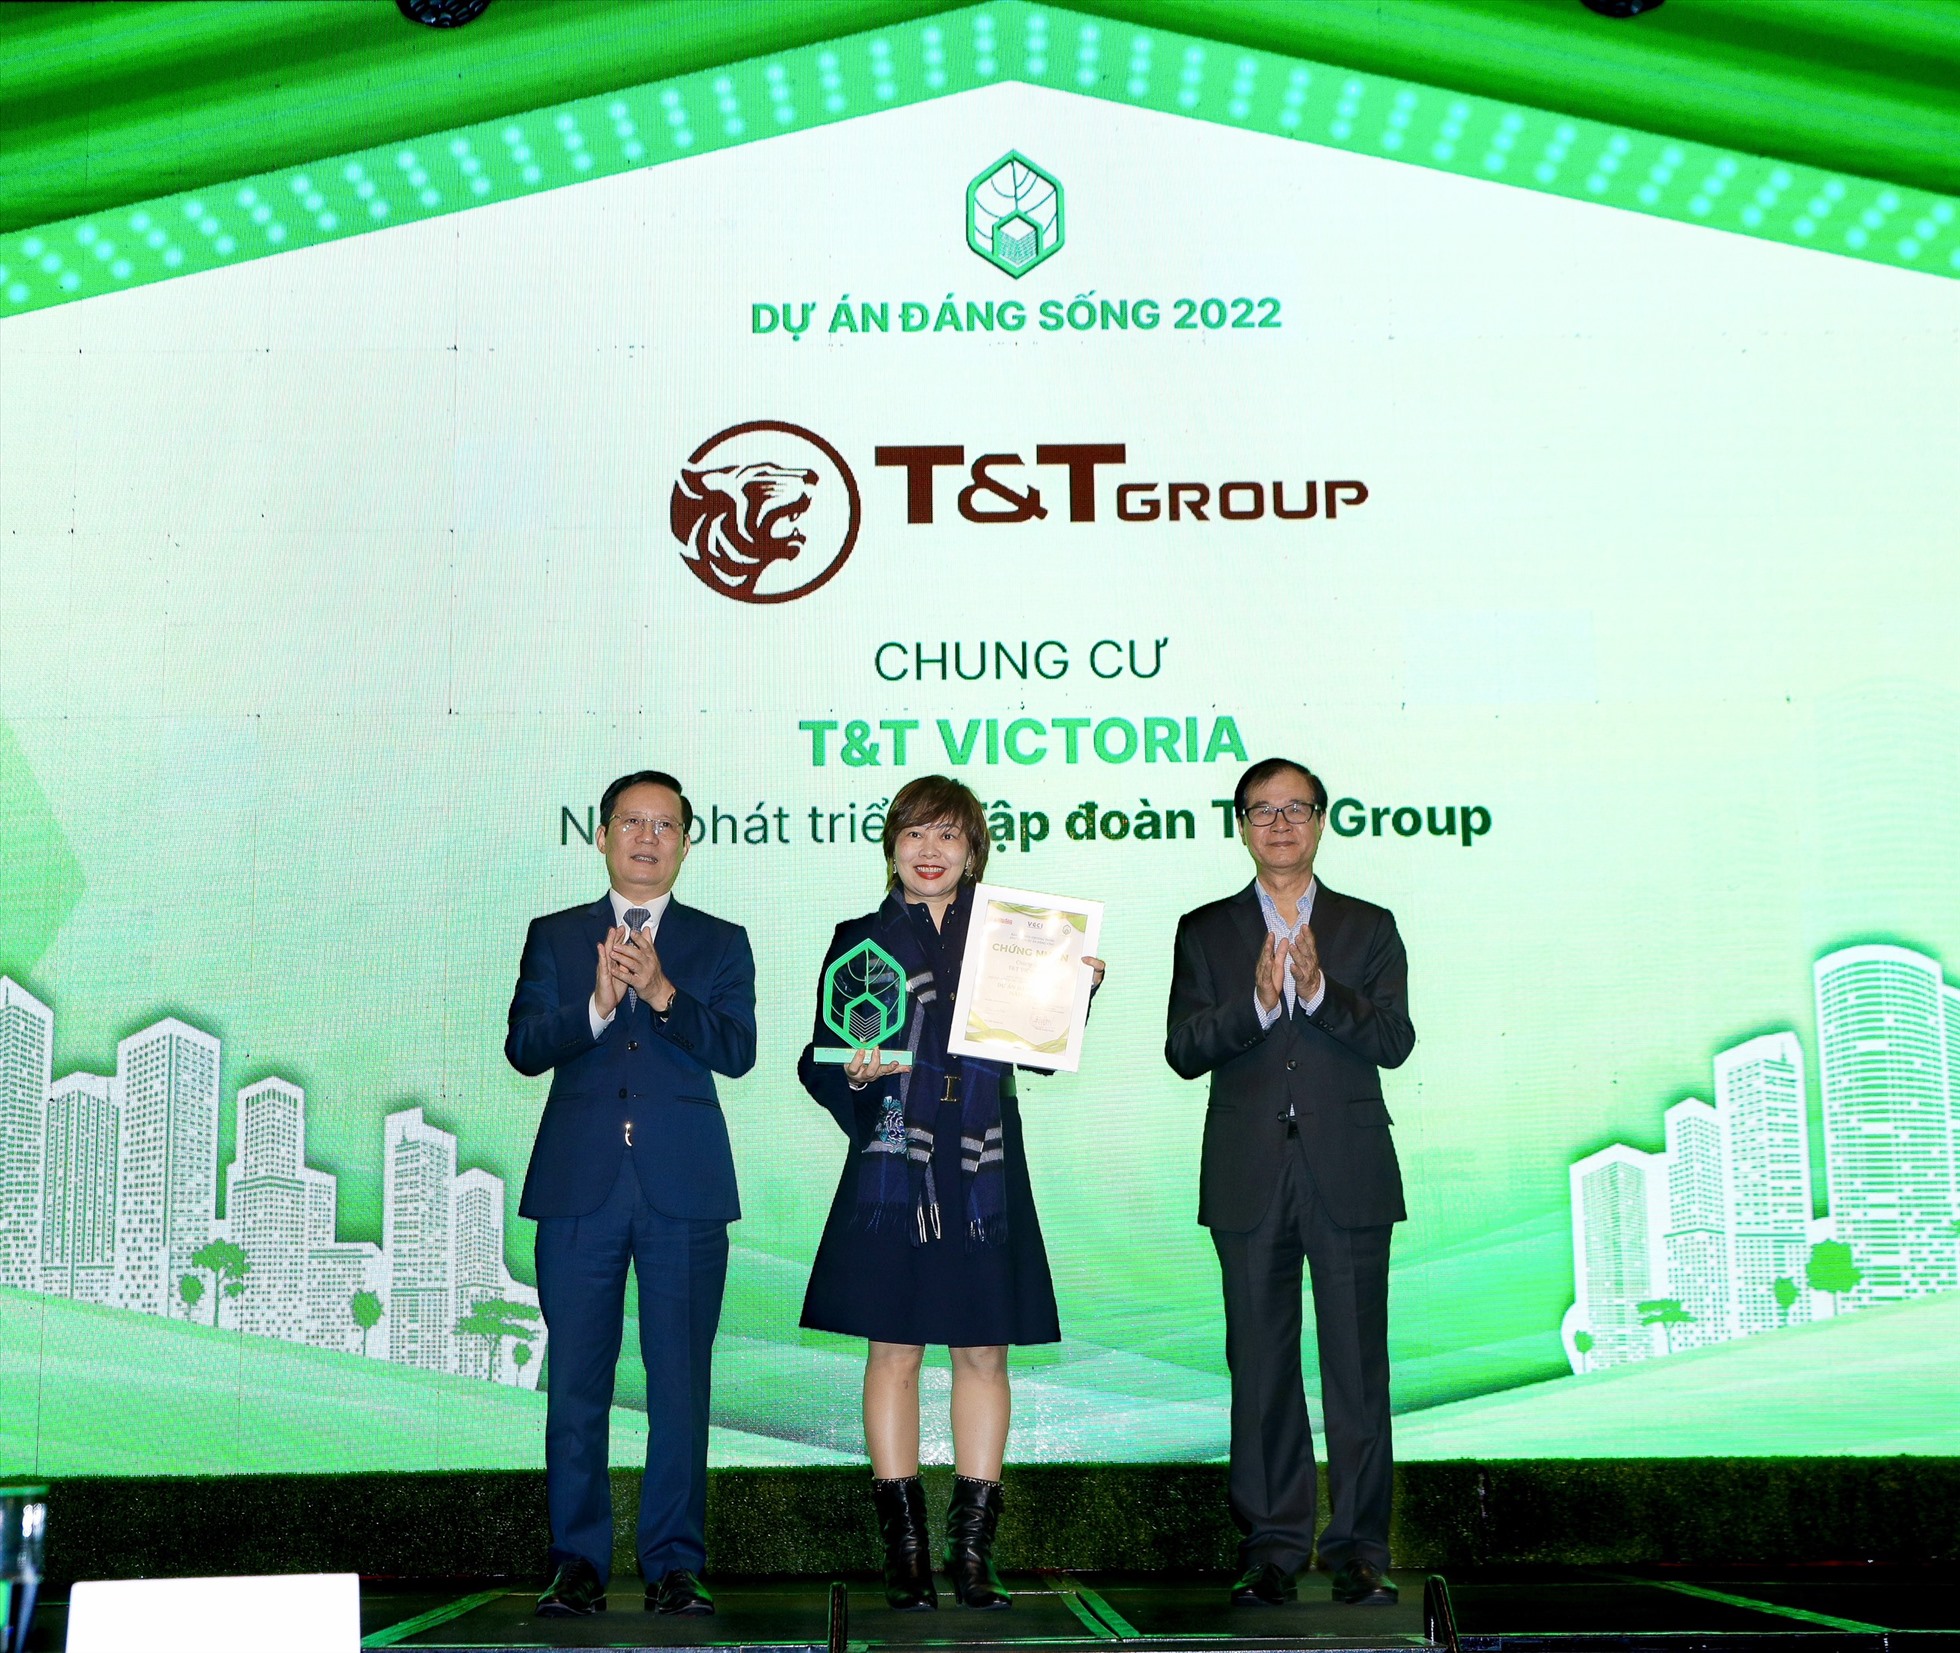 Bà Bùi Thị Minh Tâm - Tổng Giám đốc T&T Homes nhận Giải thưởng “Dự án đáng sống năm 2022”. Ảnh: T&T Group